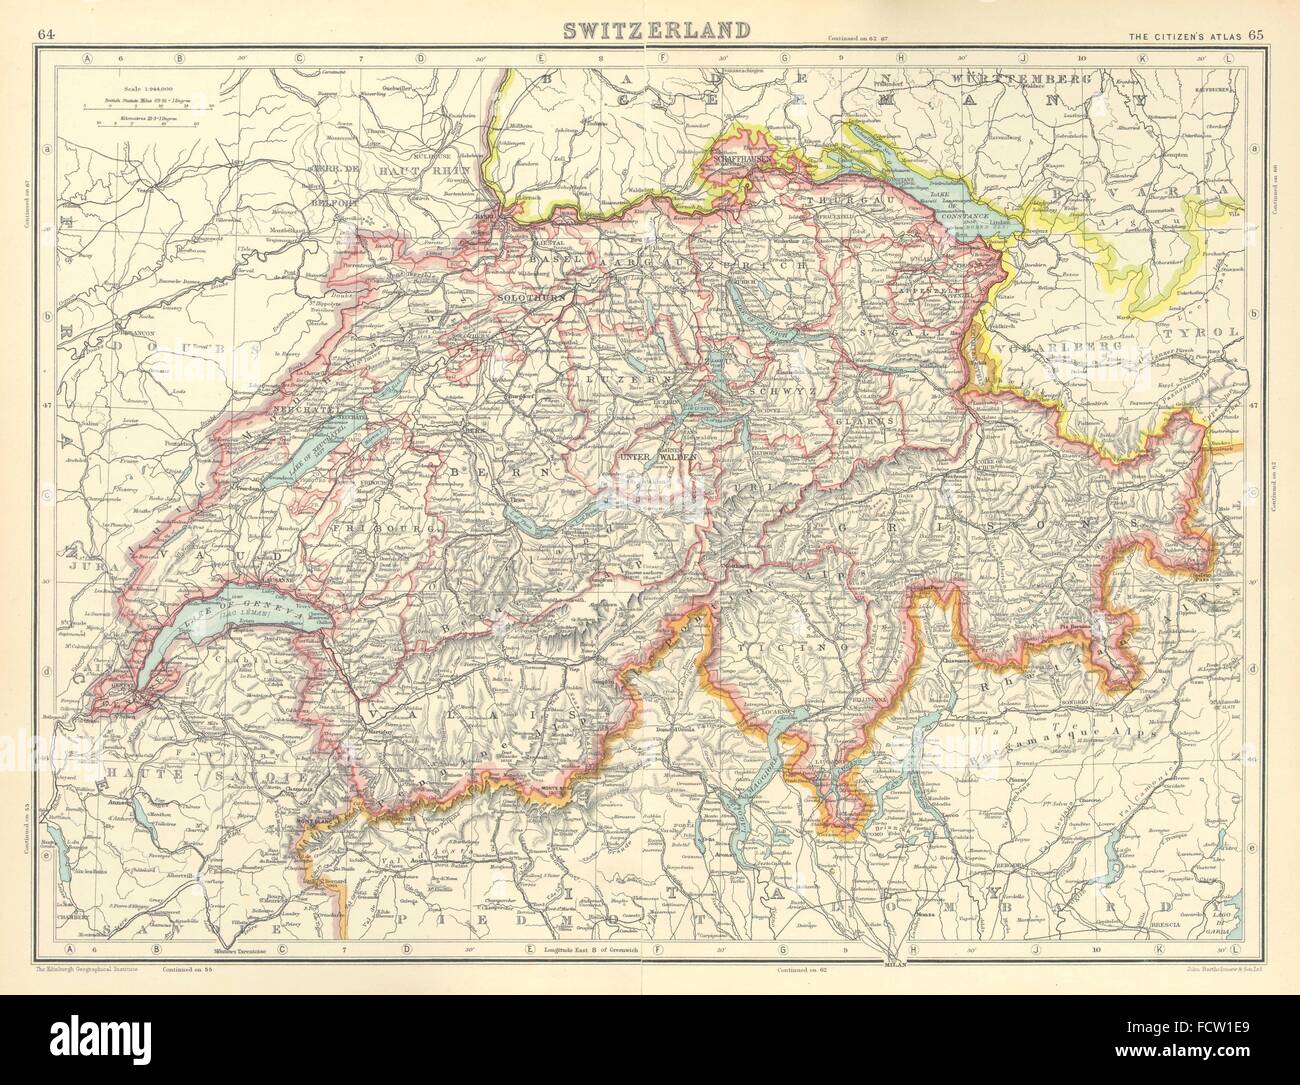 SWITZERLAND: Shows Cantons, railways. BARTHOLOMEW, 1924 vintage map Stock Photo